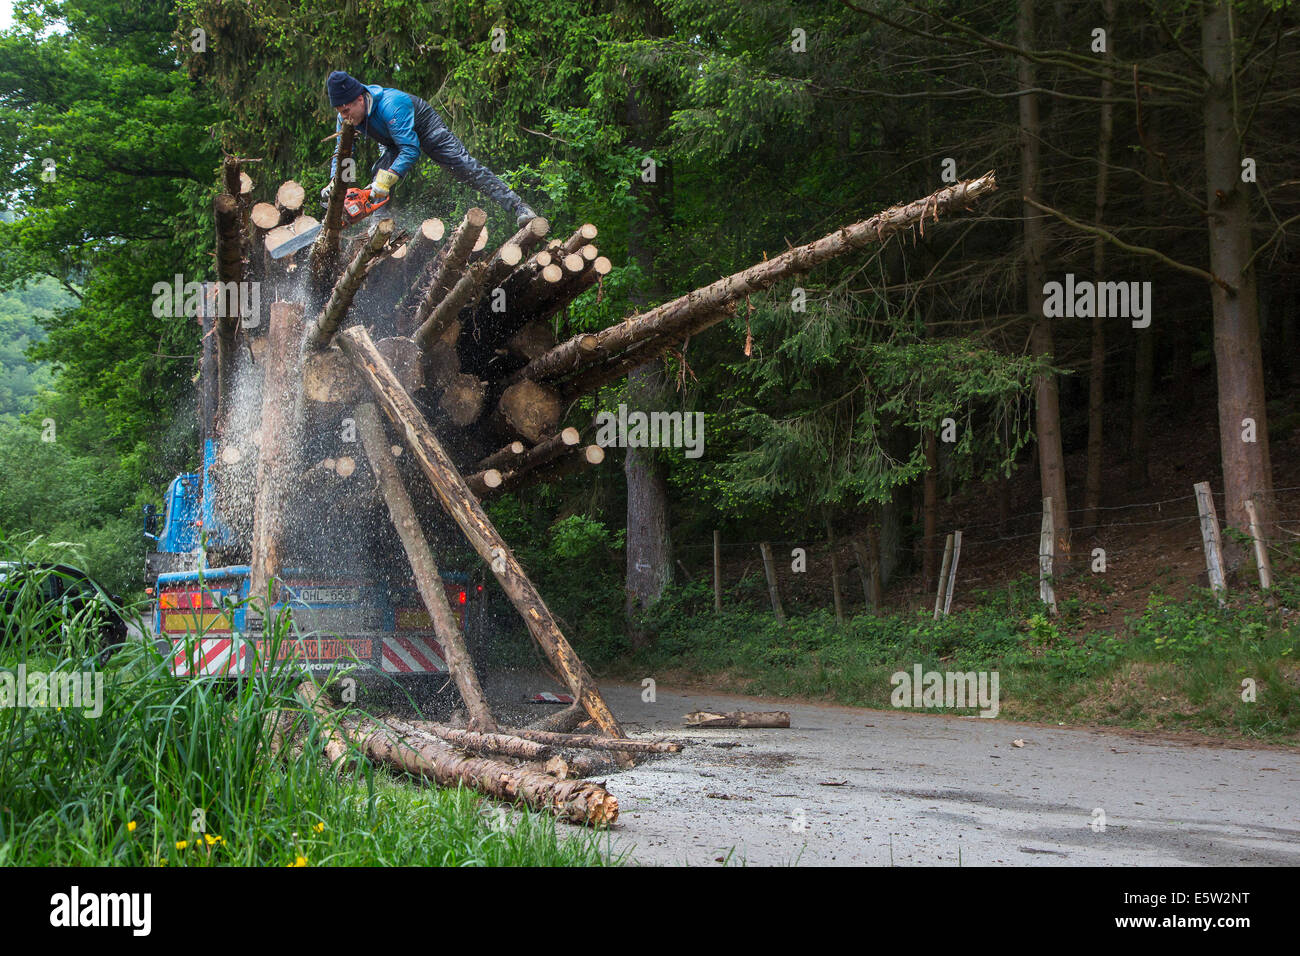 Forester corte demasiado largos registros con motosierra después de cargar troncos de árboles talados en camión de registro en el bosque Foto de stock